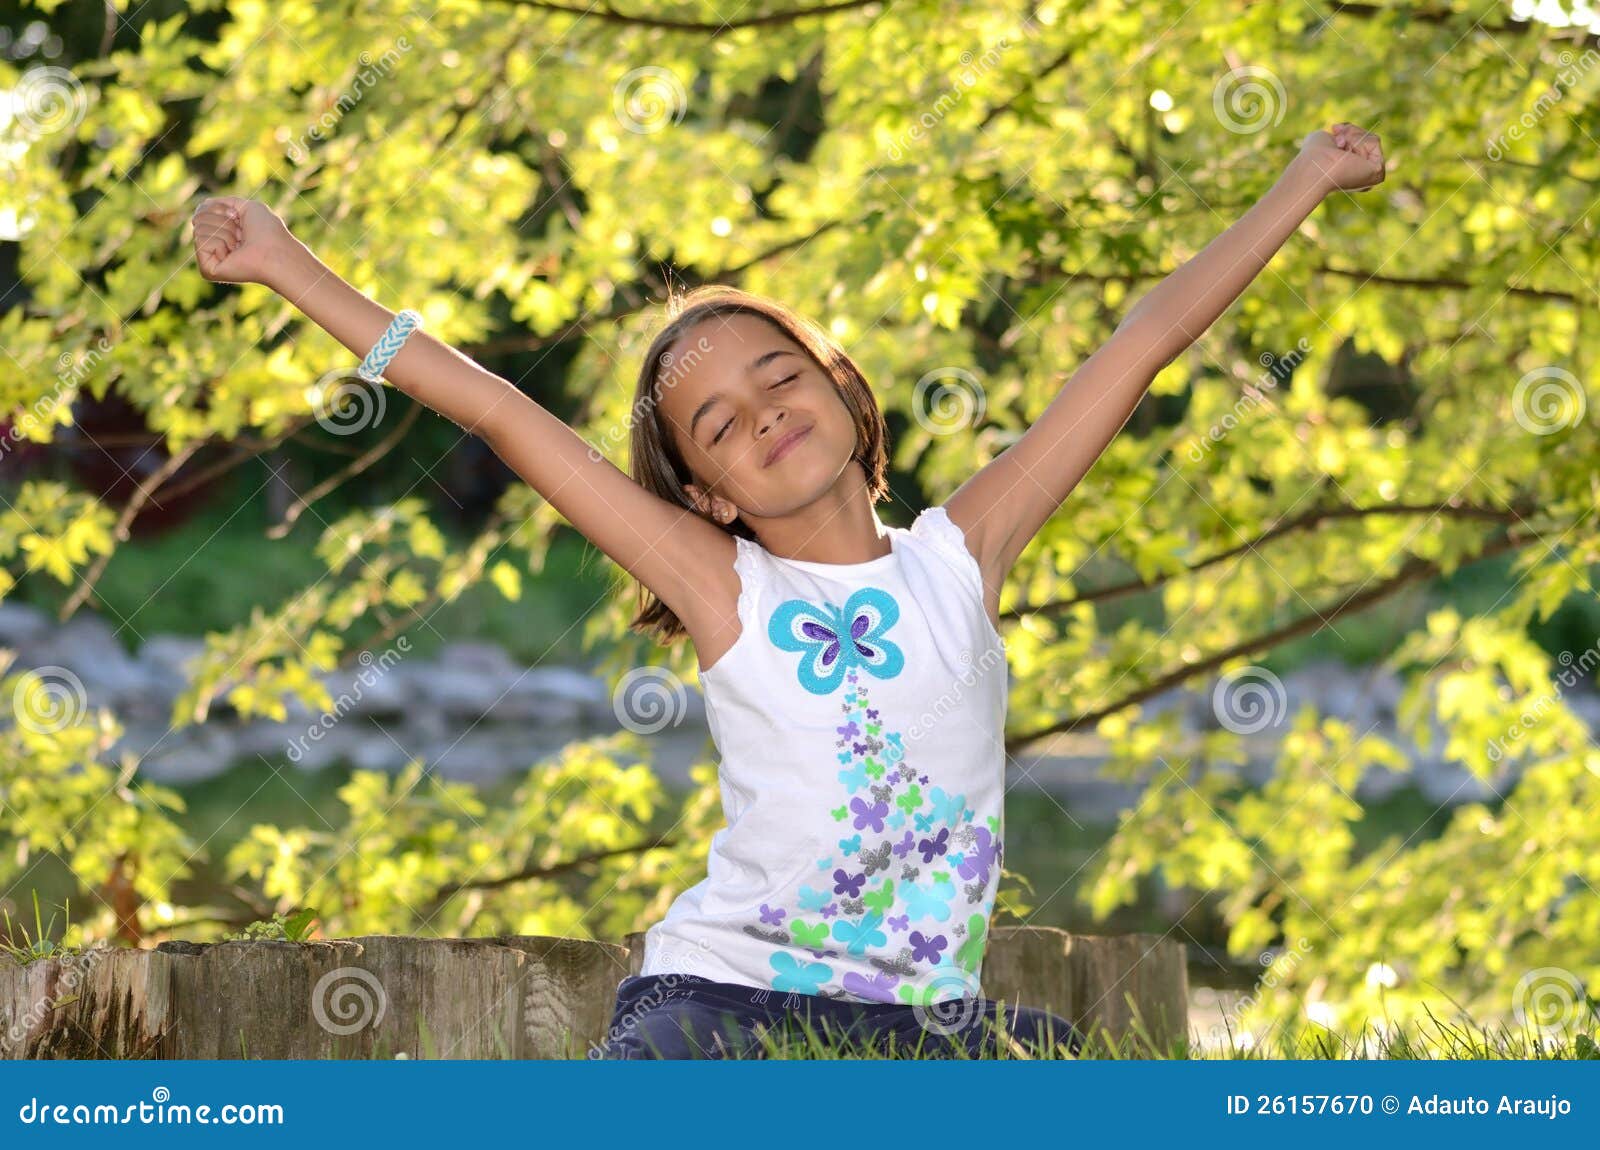 愉快的可爱的小女孩享受夏日 库存图片. 图片 包括有 情感, 幸福, 女孩, 乐趣, 长期, 本质, 公园 - 64549017